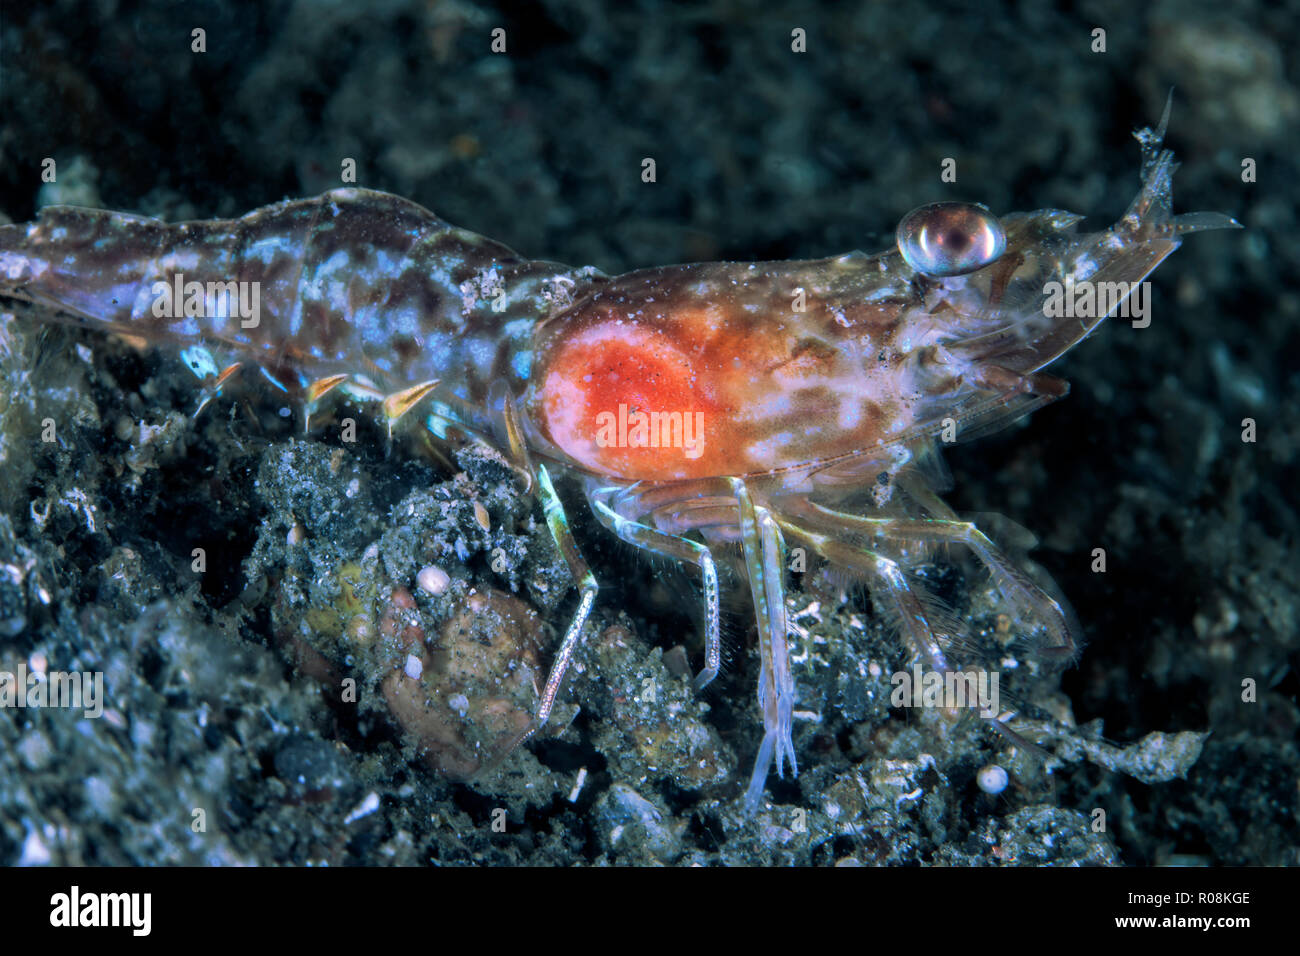 Crevettes qui ressemble à un cricket émerge de son terrier dans la mer la nuit. Difficile à trouver et photographier, comme il se déplace rapidement pour éviter la lumière Banque D'Images